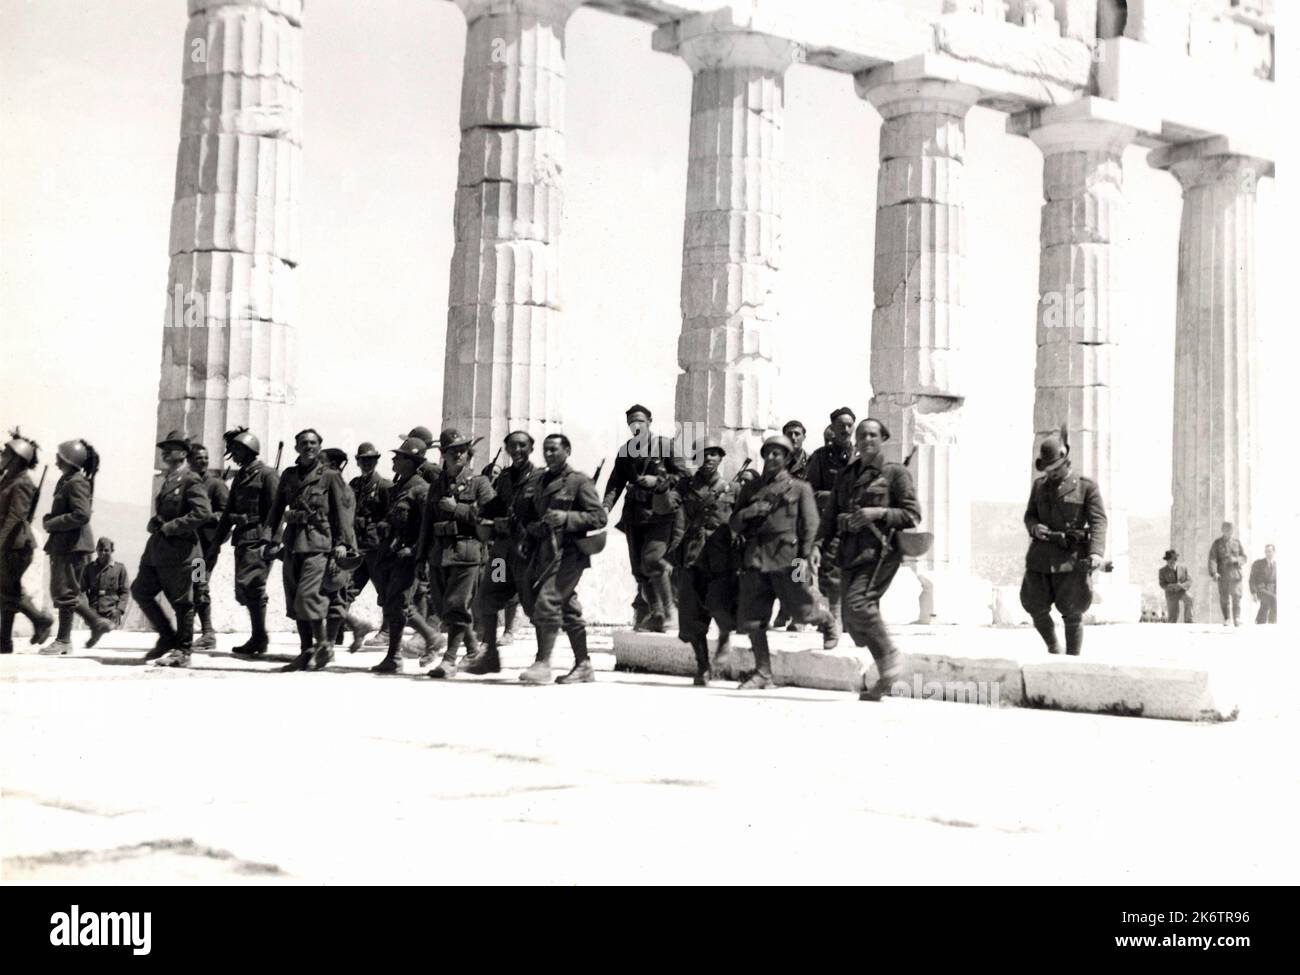 1942 ca. Atene , GRECIA : le truppe fasciste militari italiane invadono la Grecia. In questa foto alcuni dei plotoni italiani ( Alpini e Bersaglieri ) che visitano i celebri monumenti del Tempio dell'Acropoli . Fotografo sconosciuto - ALPINO -- SECONDA GUERRA Mondiale - Guerra Mondiale 2nd - seconda Guerra Mondiale - FRONTE greco - ATENE - GRECIA - ACROPOLI - miliari soldati italiani - COLONIALISMO - COLONIALISMO - FASCISTA - FASCISMO - FASCISMO - TURISMO - archeologia - archeologia - tempio - tempio - templio - STORIA - FOTO STORICHE --- ARCHIVIO GBB Foto Stock